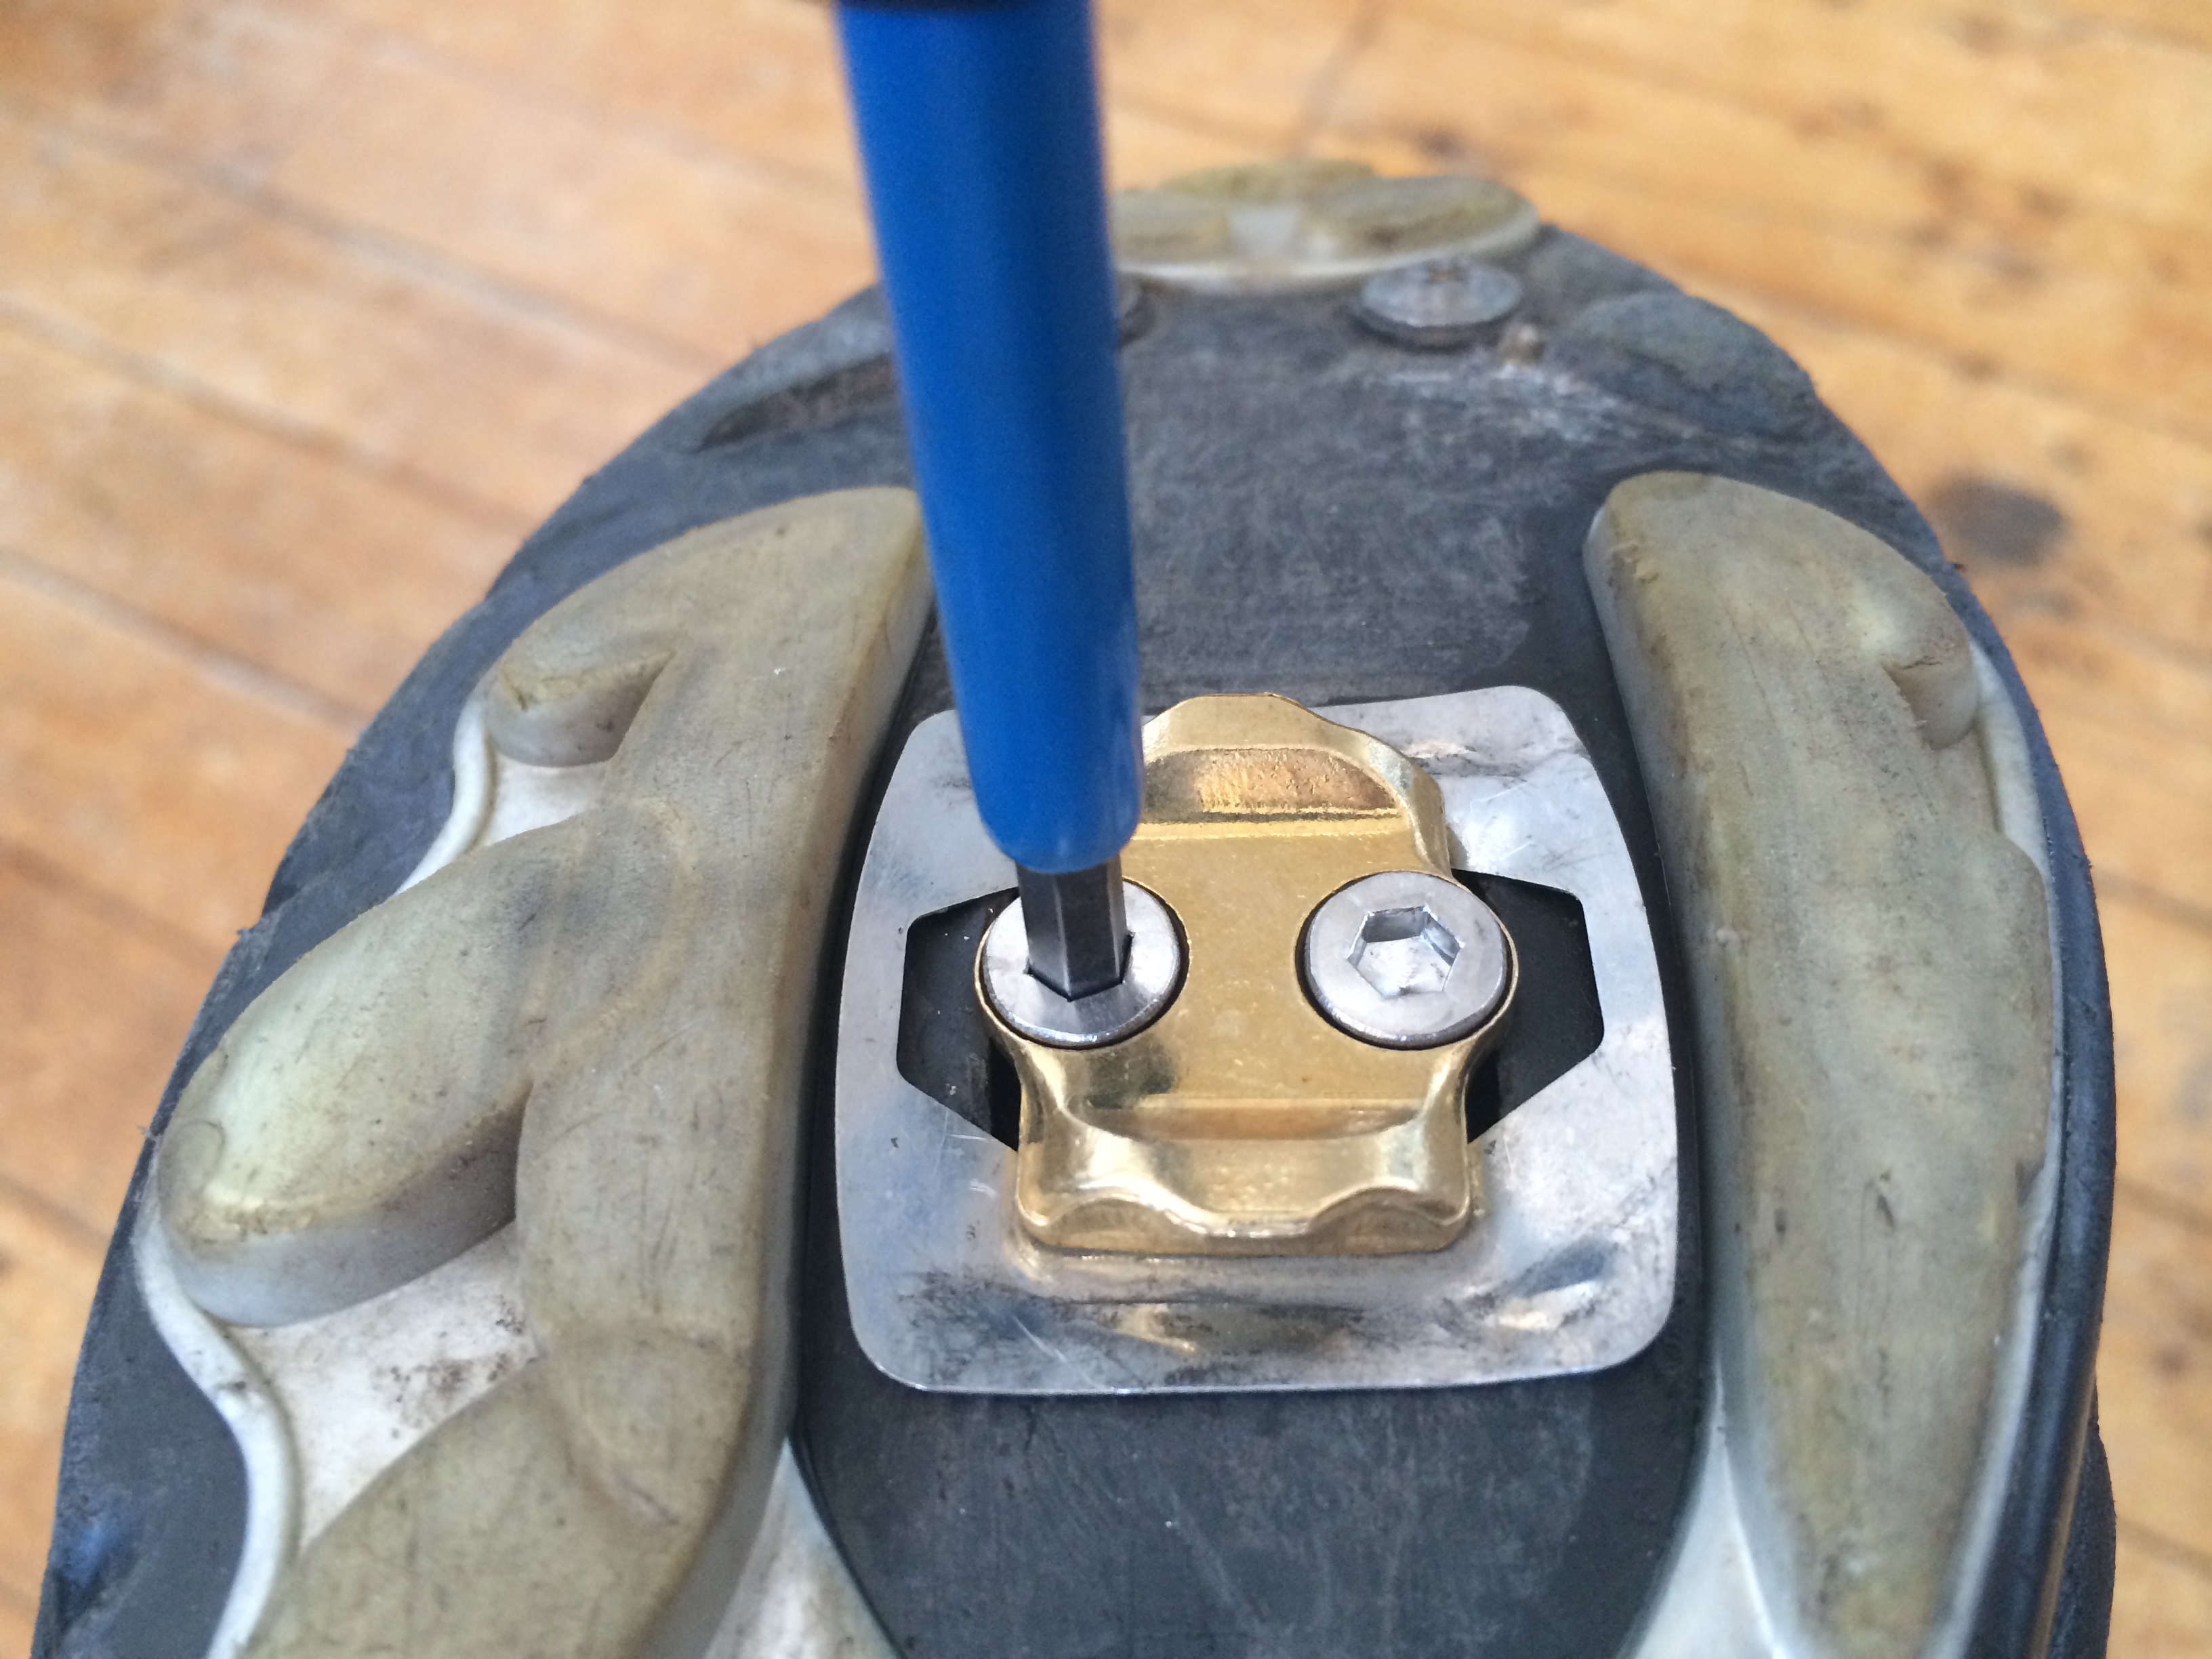 tightening spd pedals